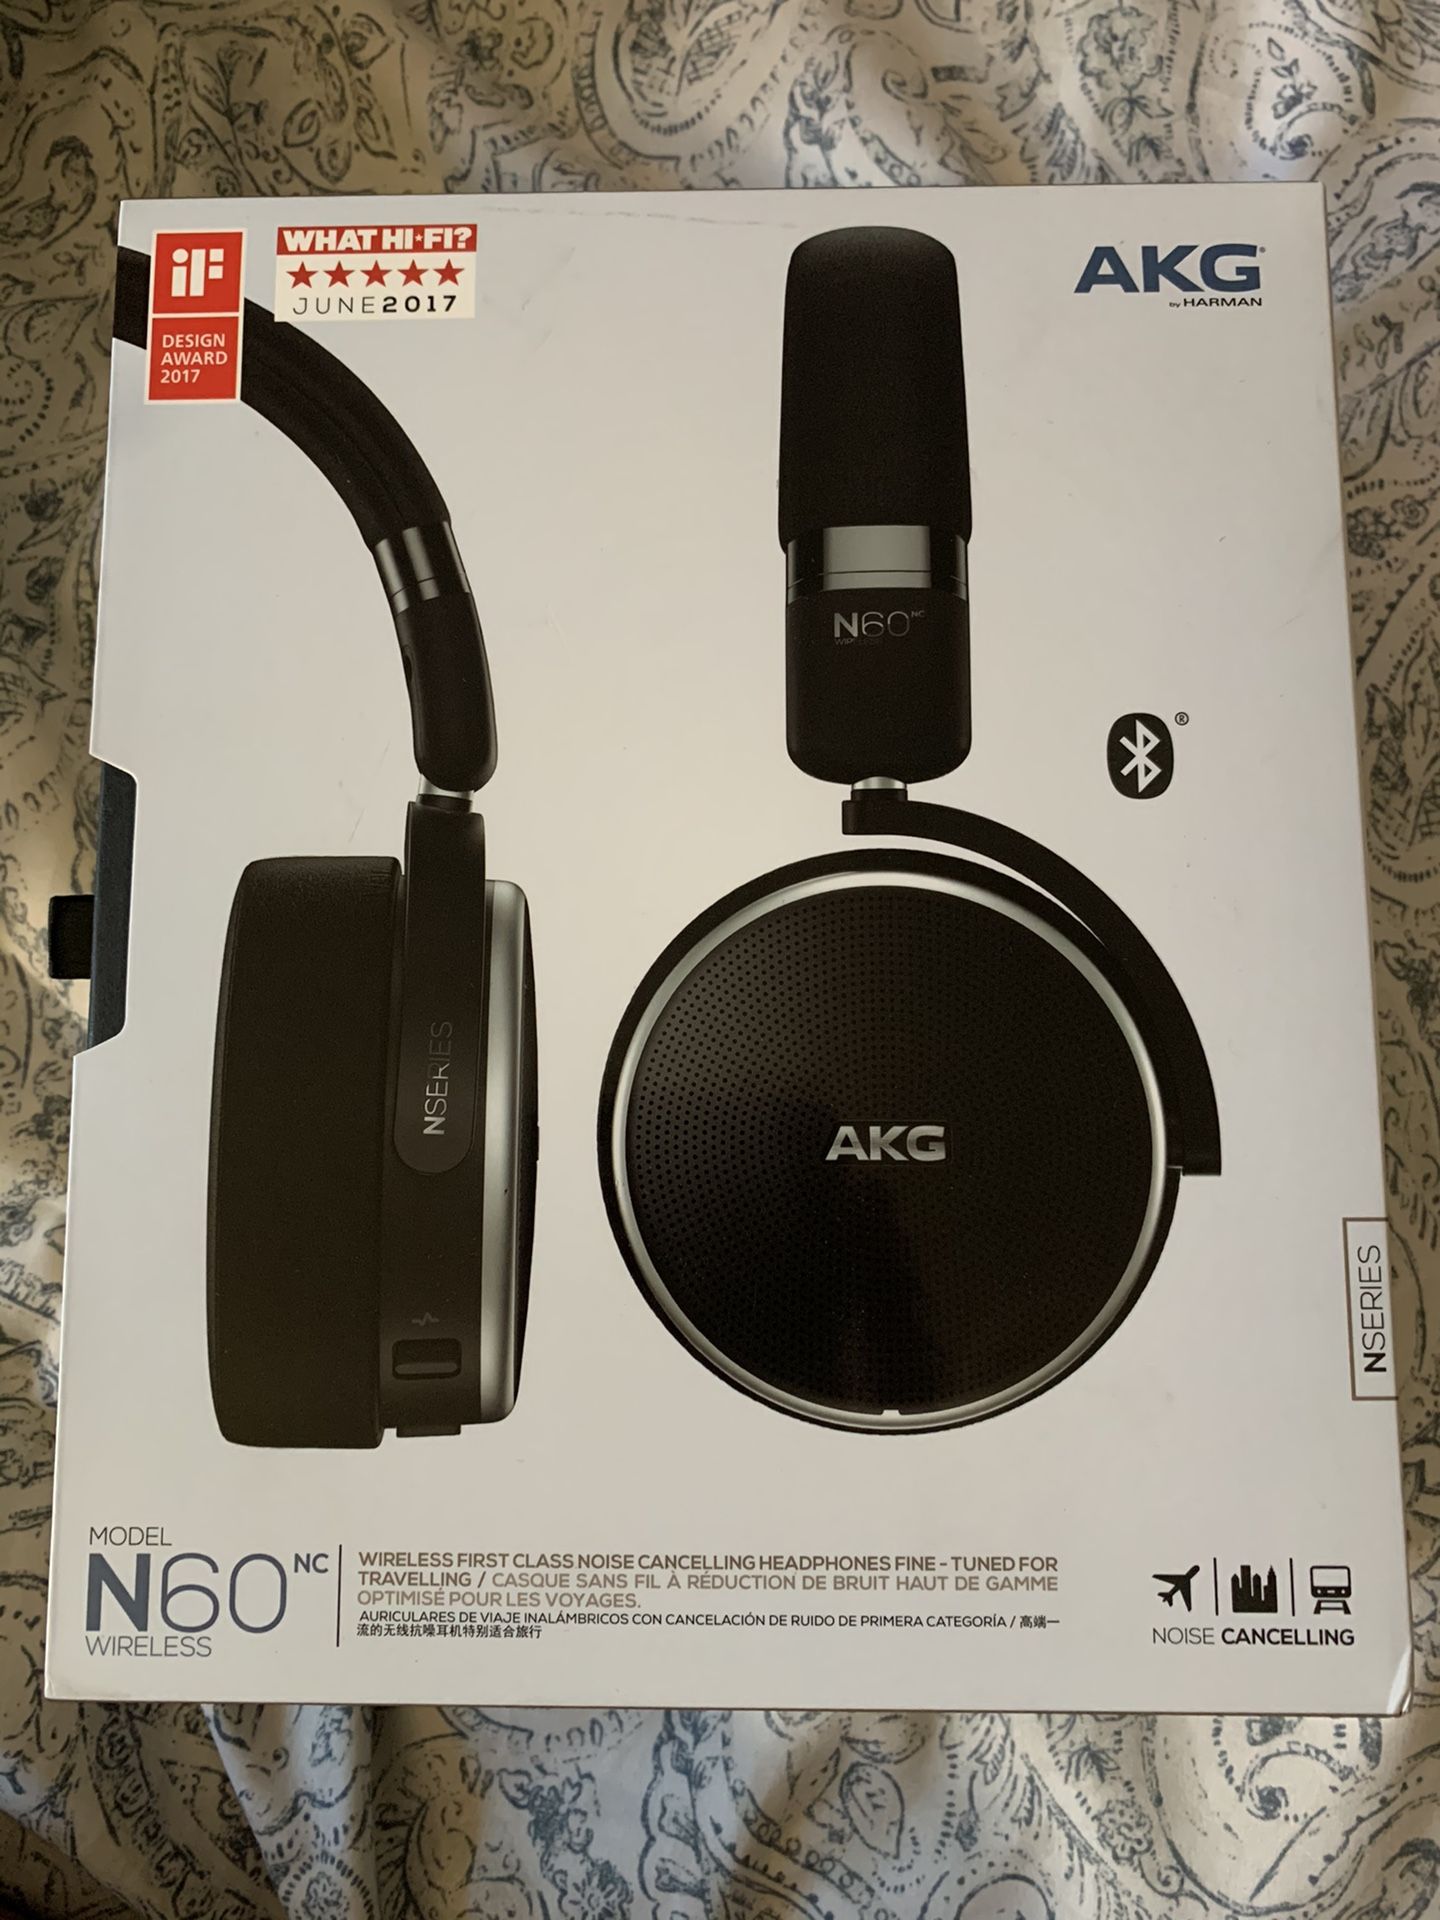 AKG Model N60 Noise Canceling Wireless Headphones